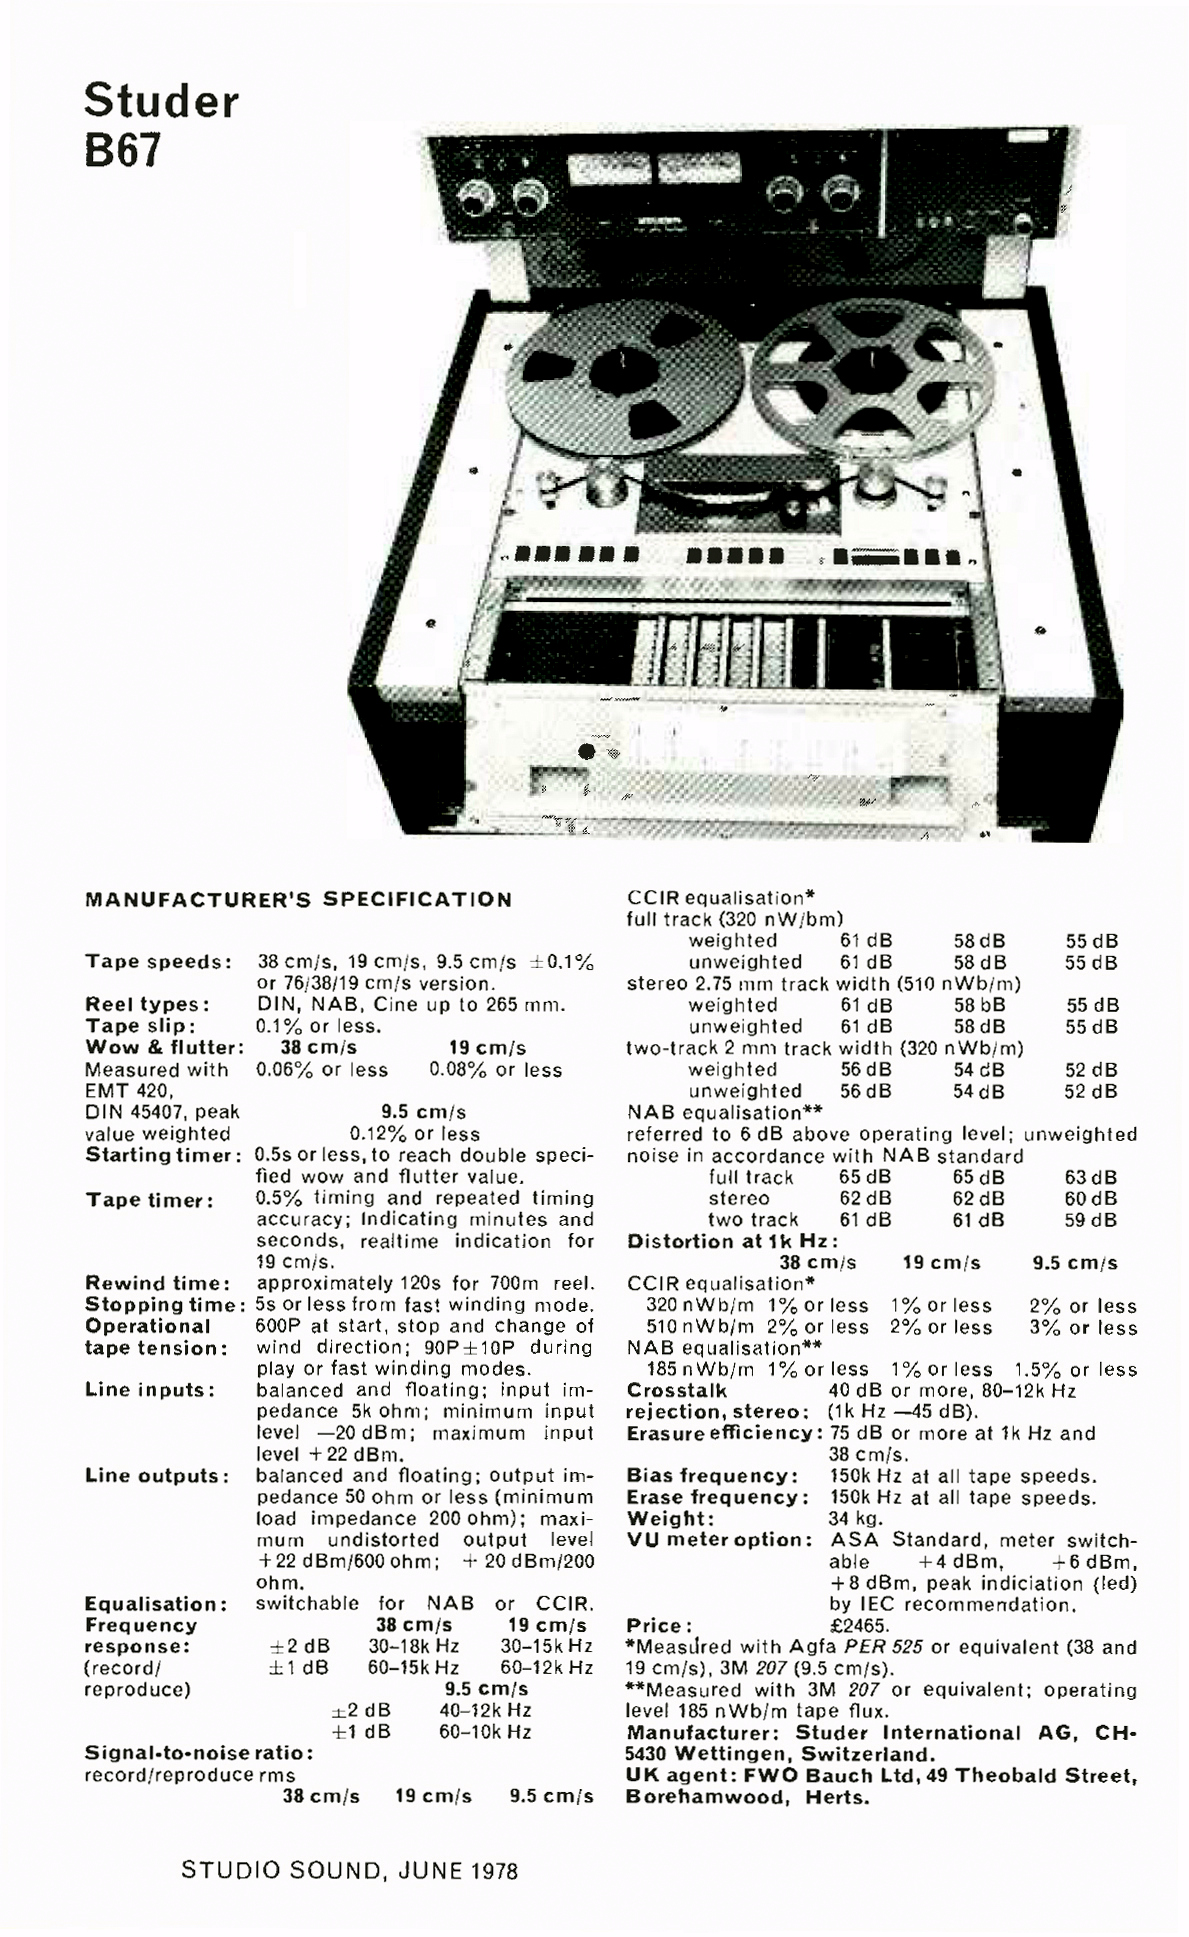 Studer B-67-Daten-1978.jpg